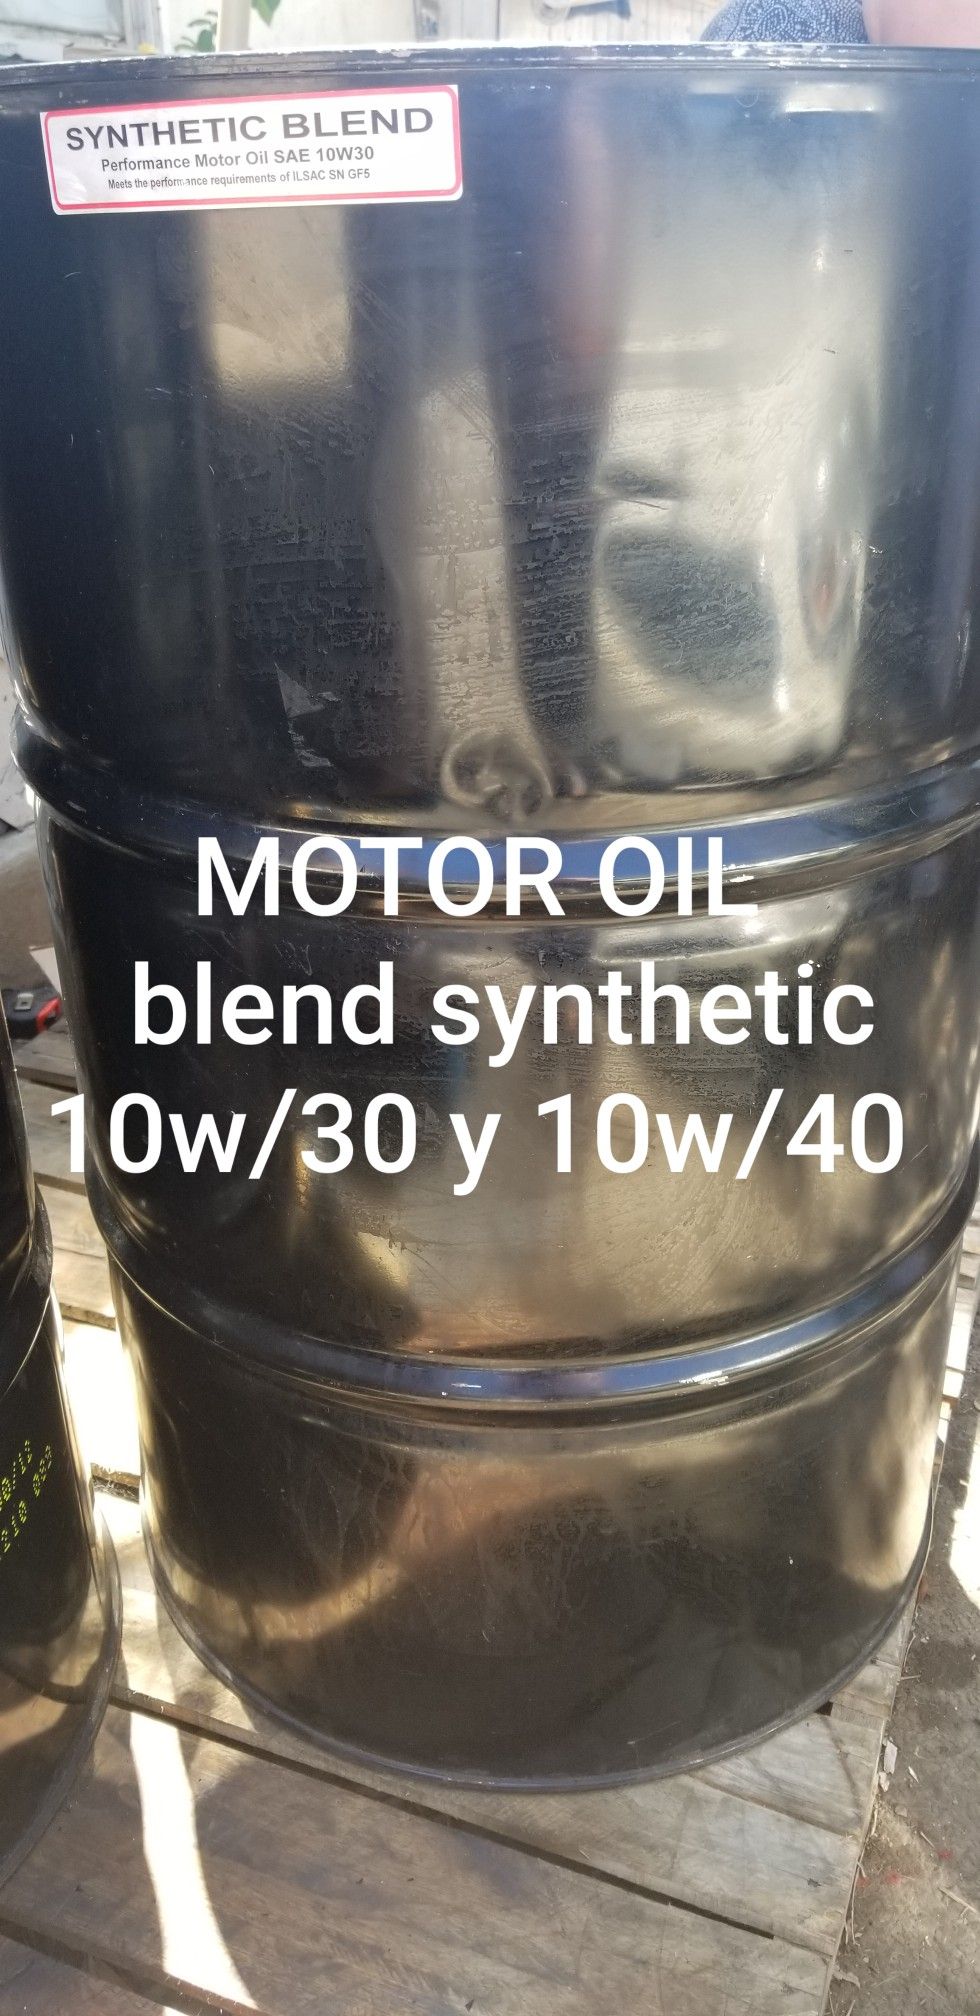 Motor oil